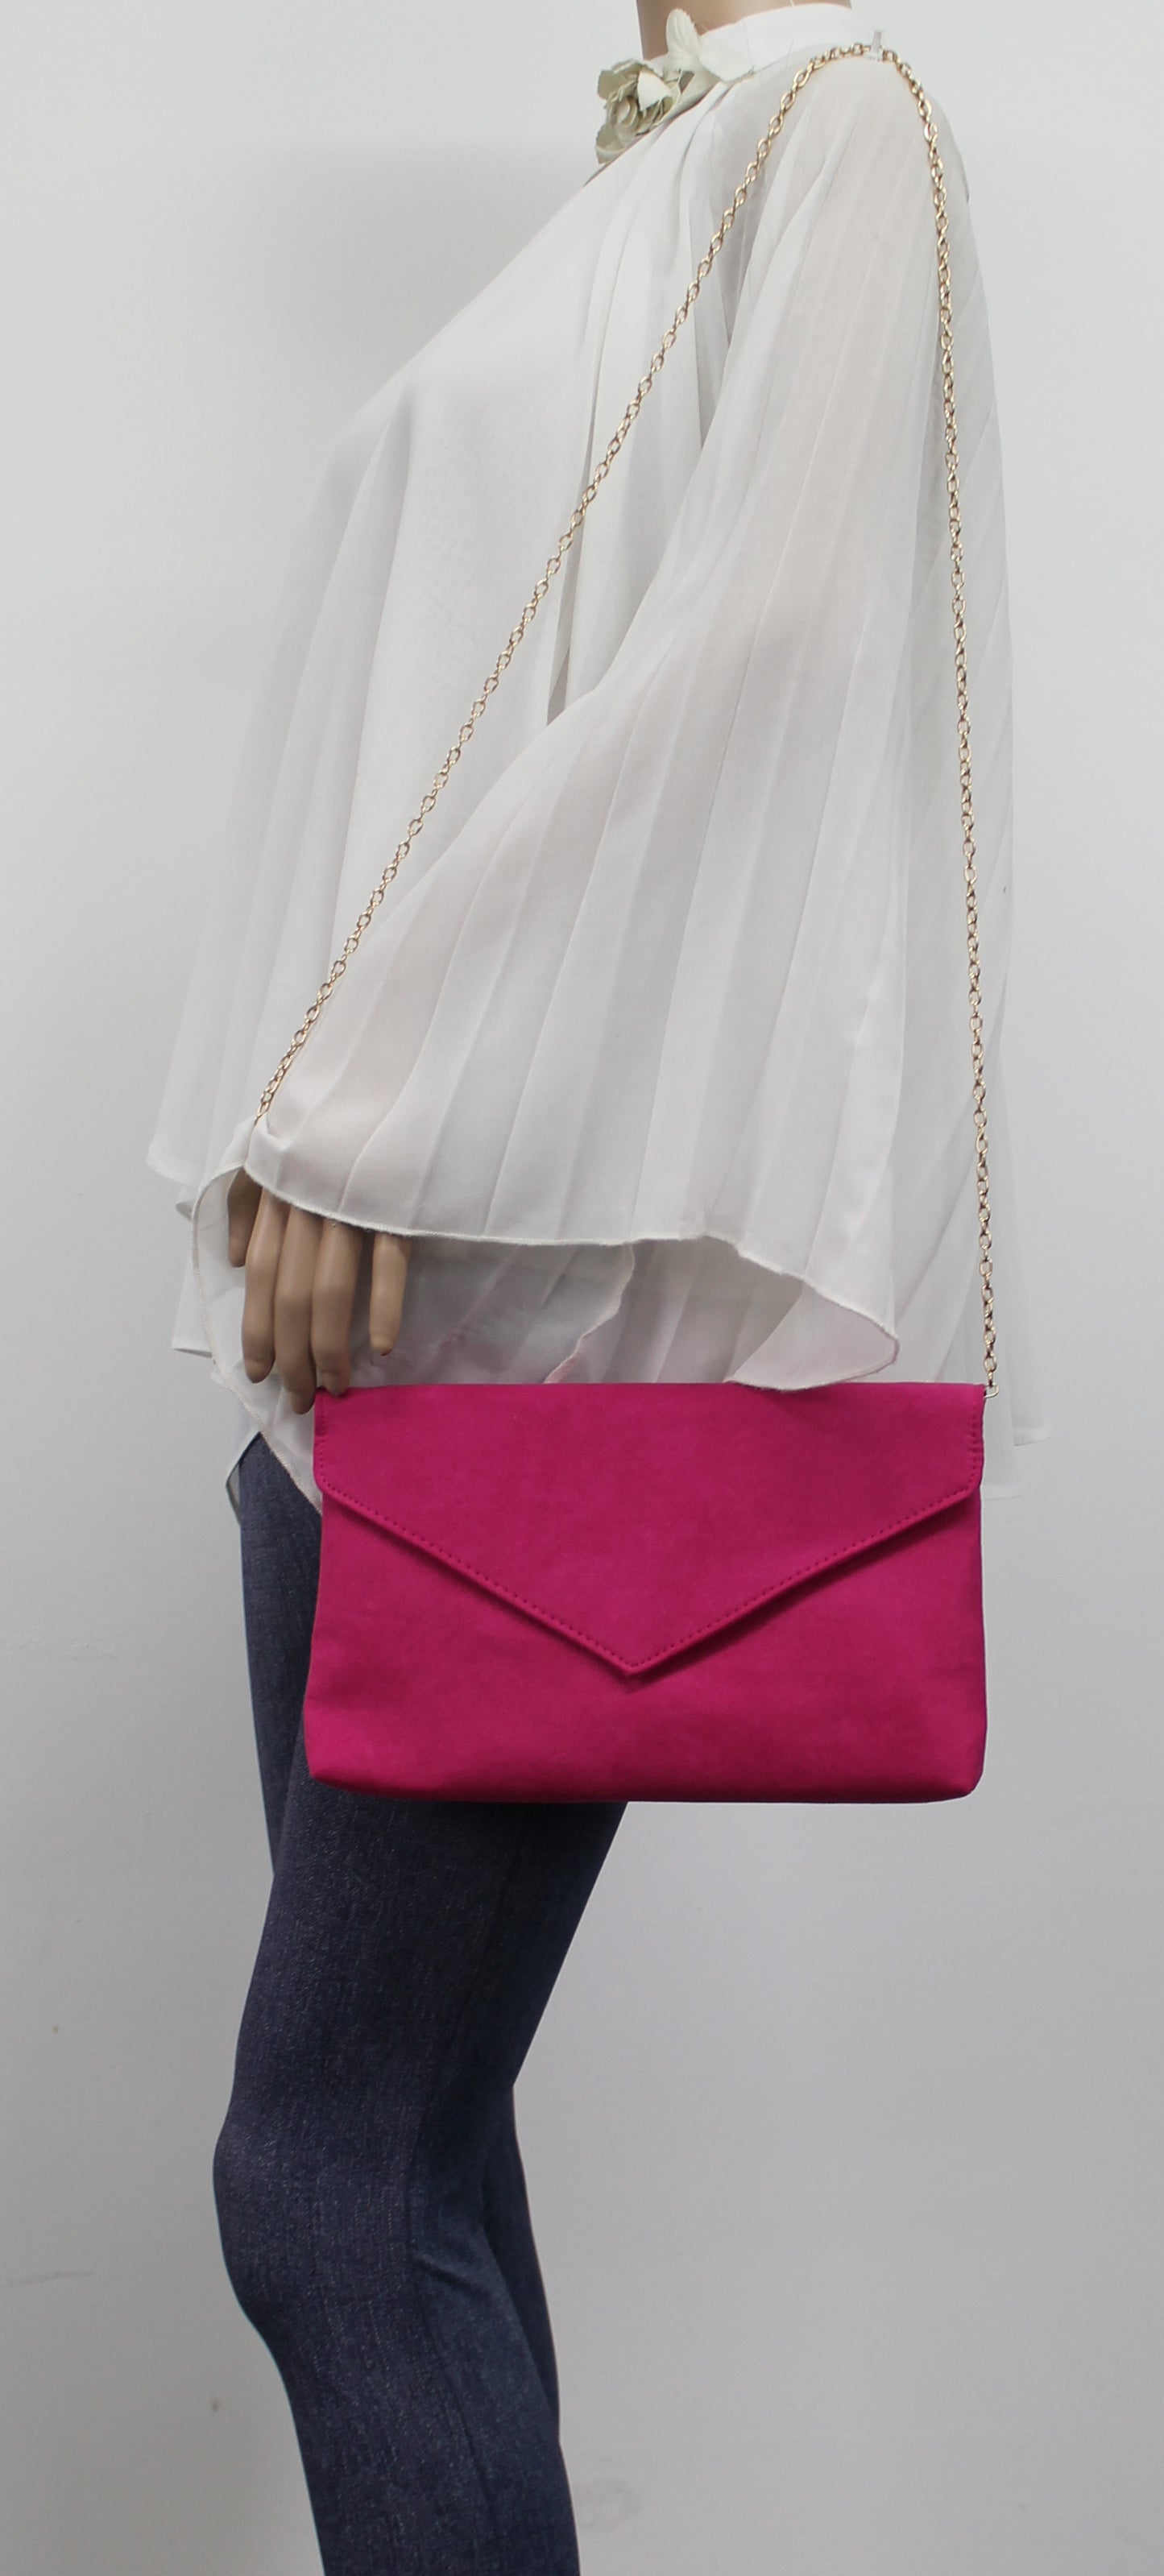 SWANKYSWANS Rosa Clutch Bag Fuchsia Cute Cheap Clutch Bag For Weddings School and Work